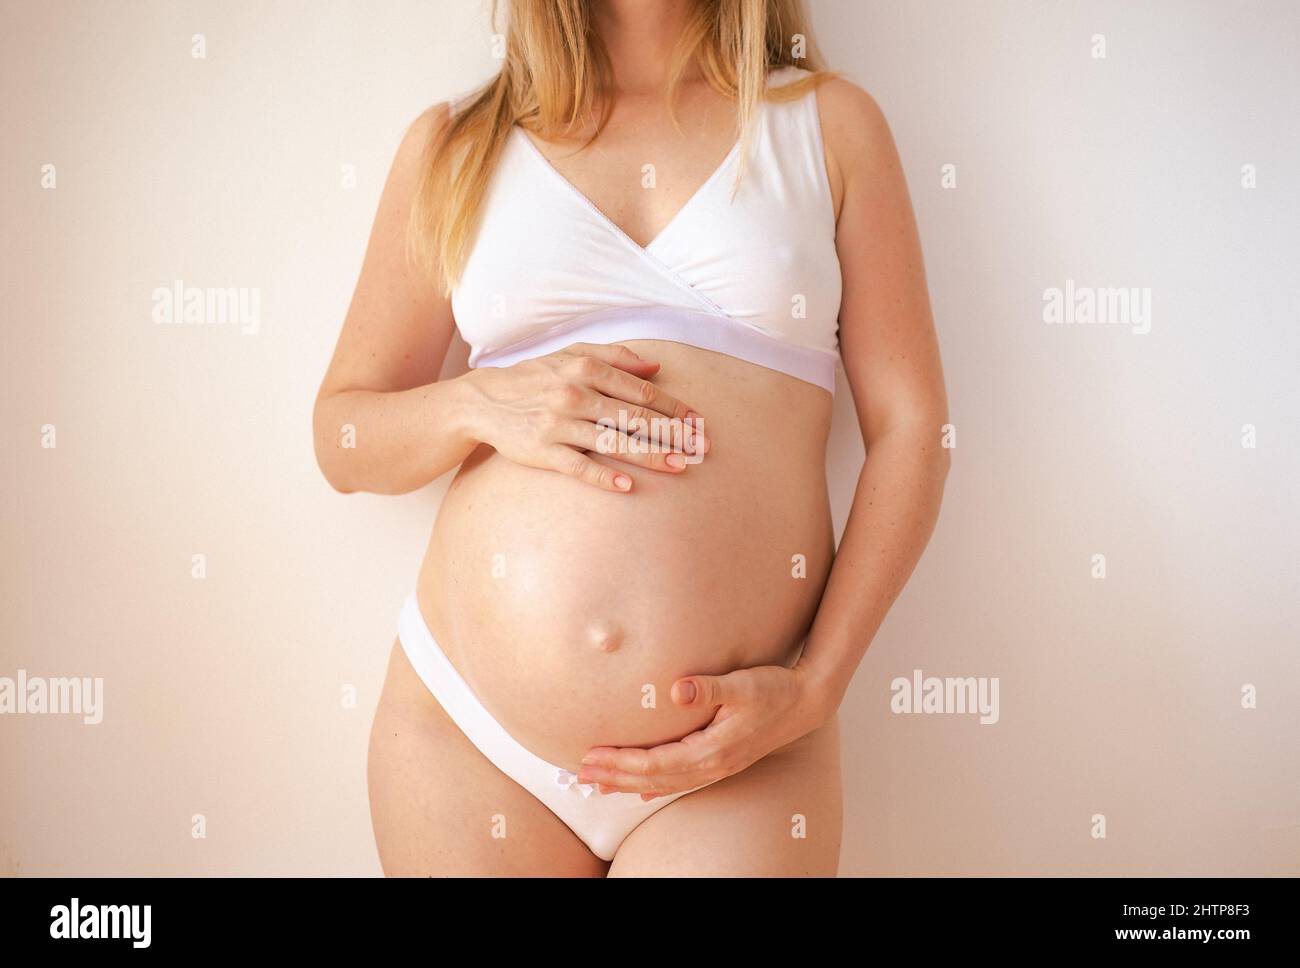 vientre de mujer embarazada, tecnología reproductiva, esperanza, nuevo concepto de vida Foto de stock